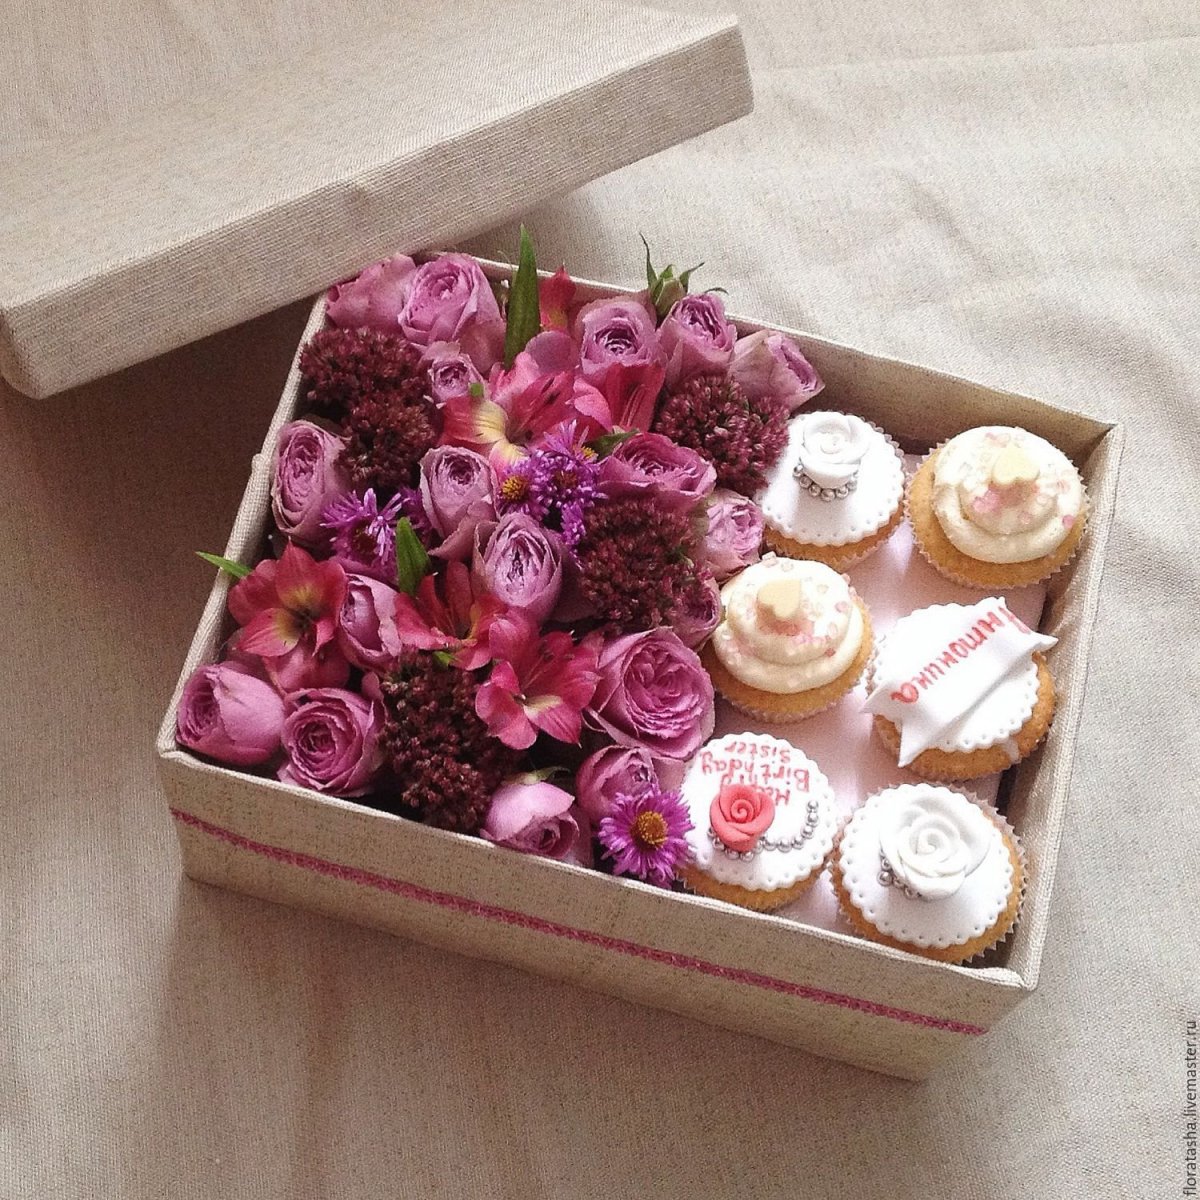 Капкейки с цветами в коробке